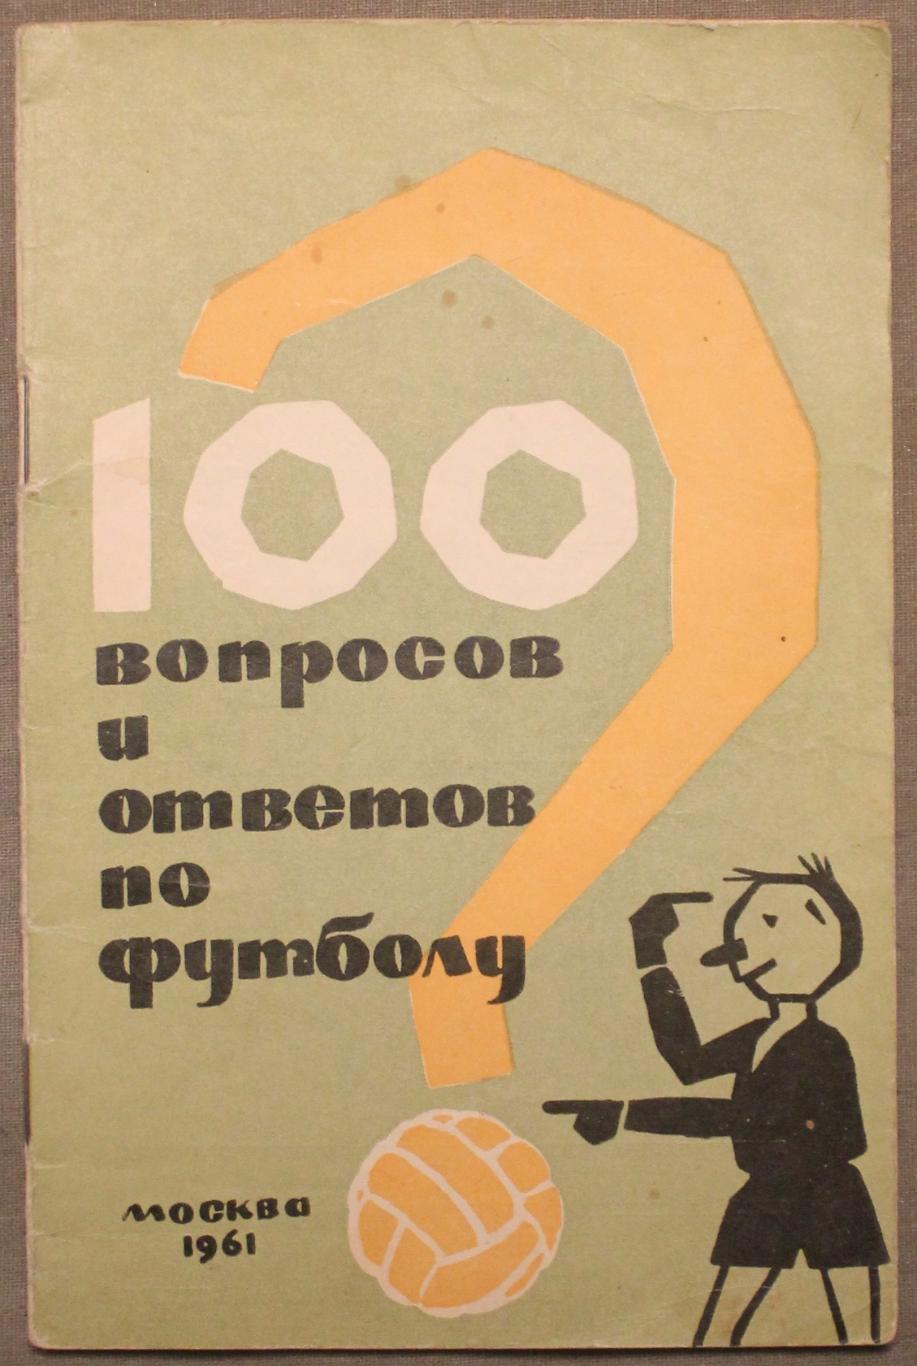 Сергей Руднев, Александр Меньшиков 100 вопросов и ответов по футболу 1961